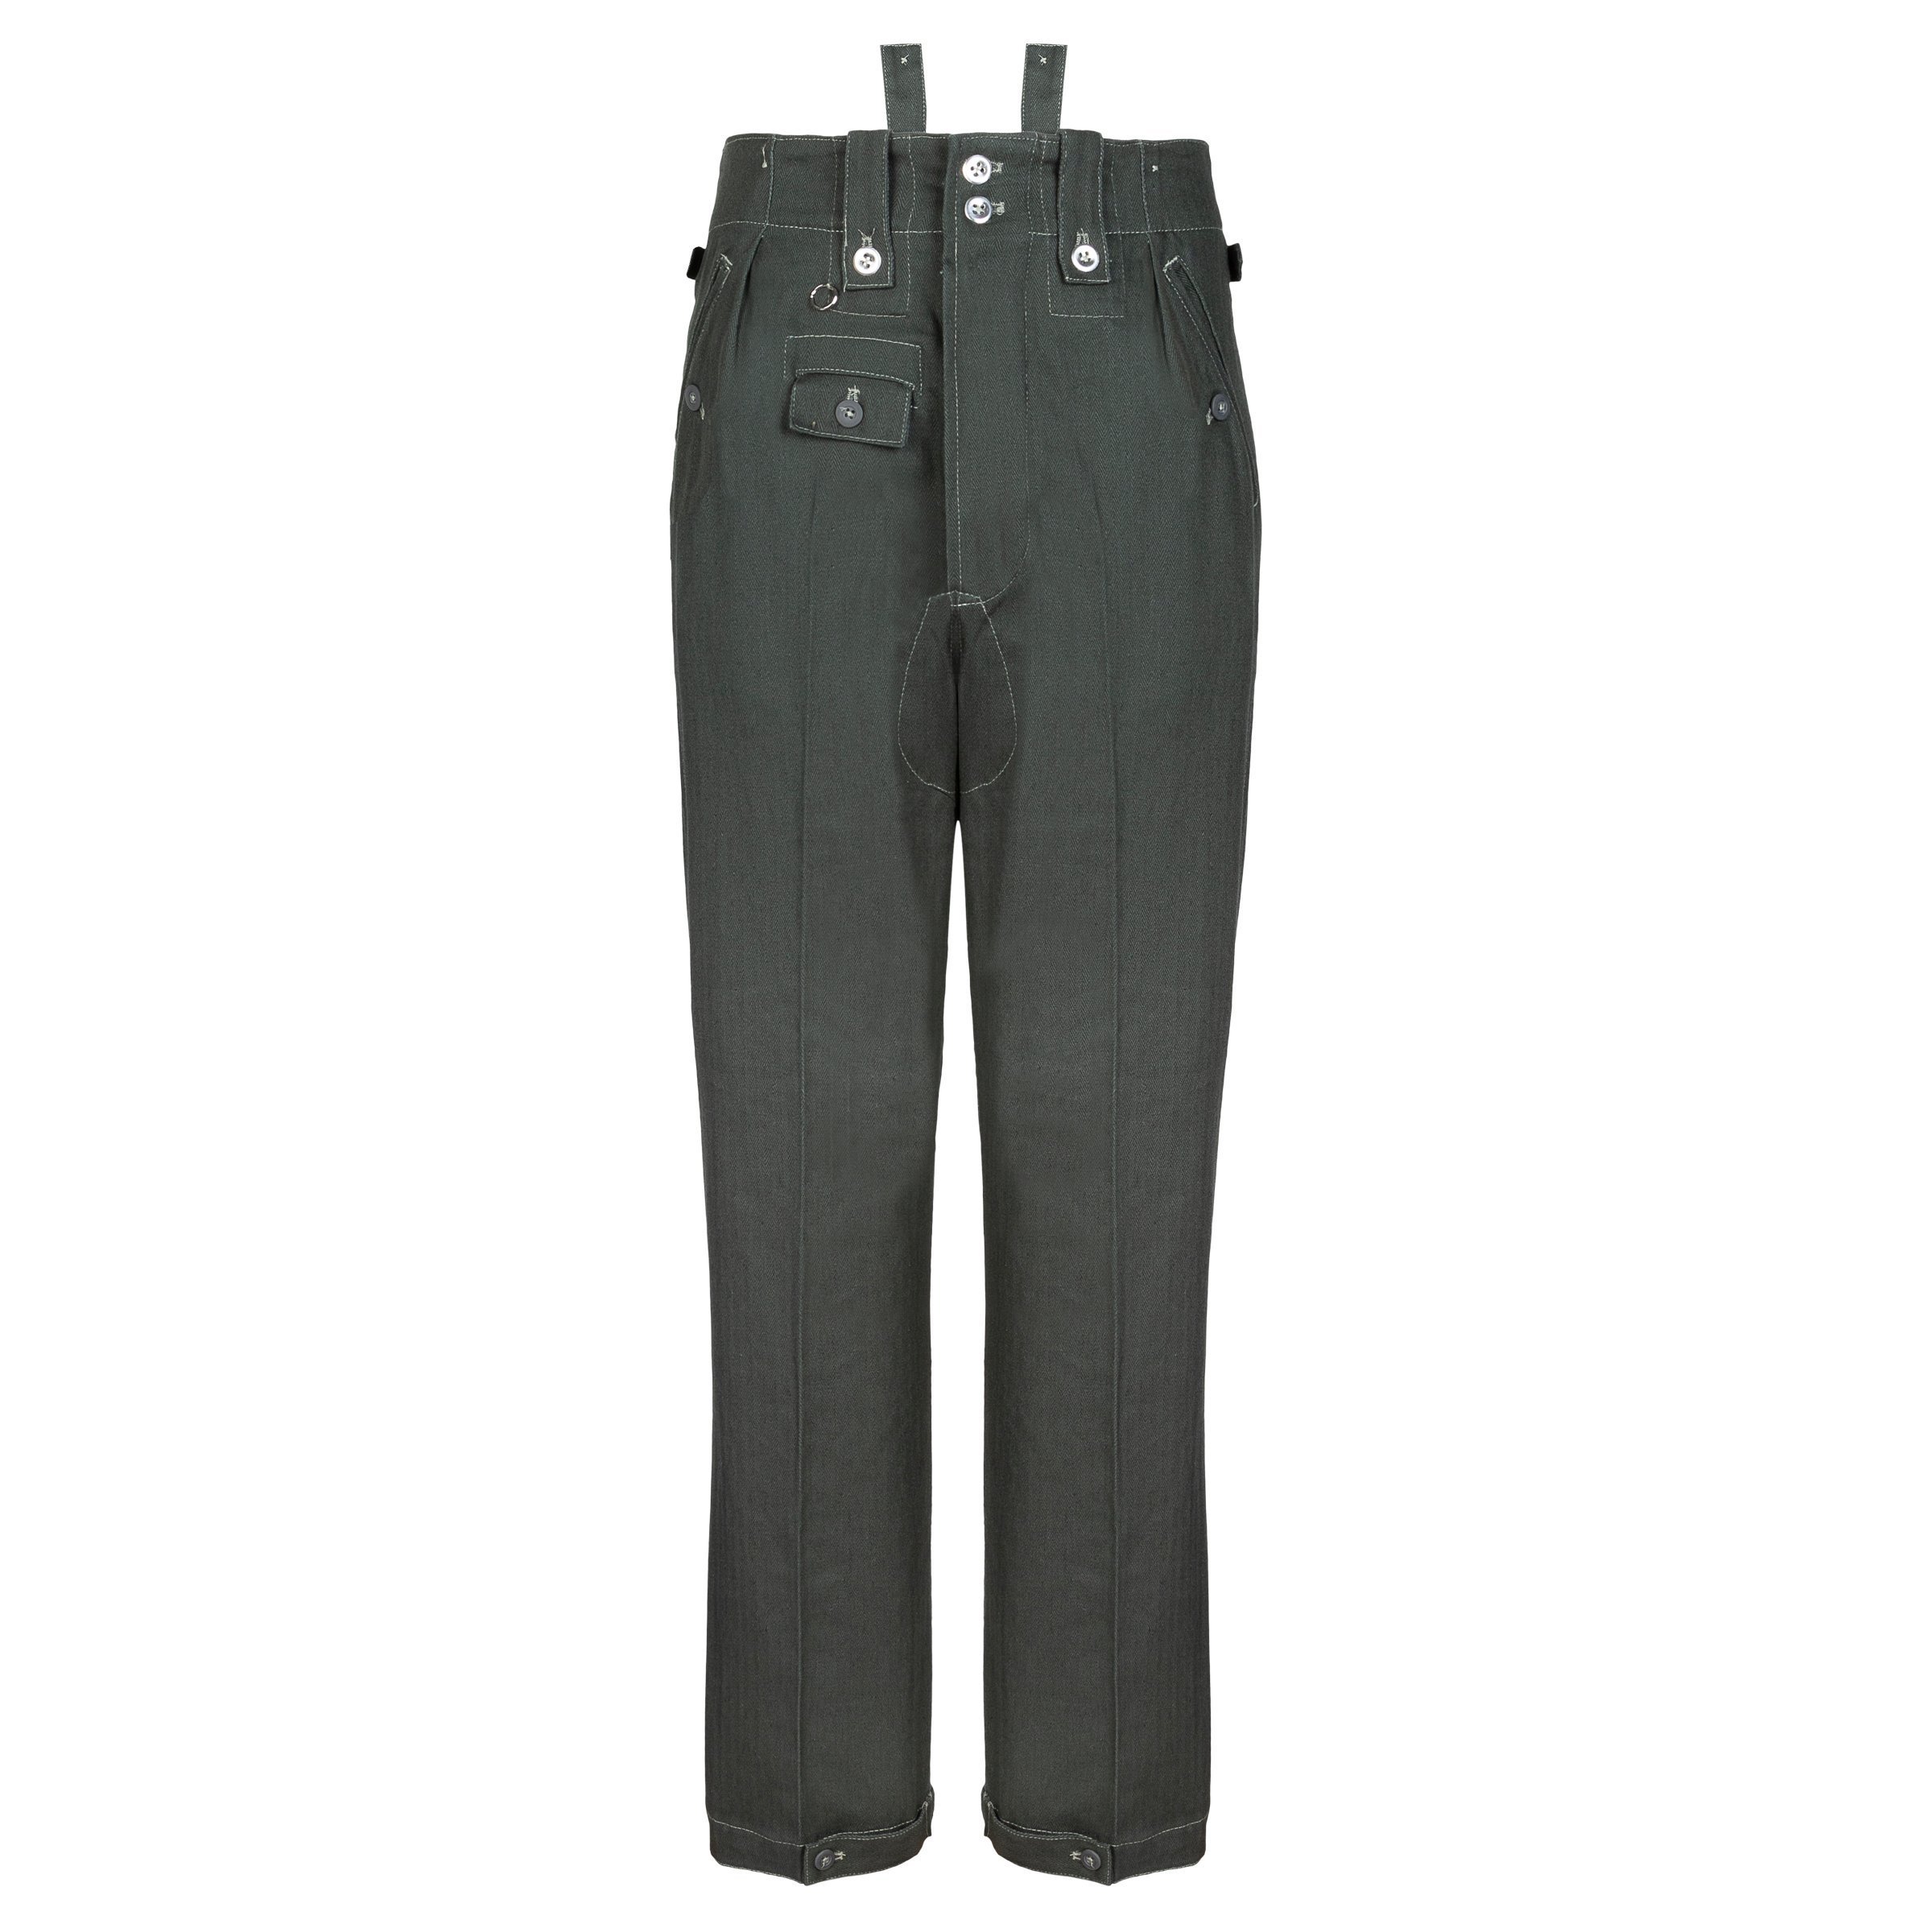 M43 Drillichhose - HBT trousers - repro by Sturm 56 48,75 € | Nestof.pl